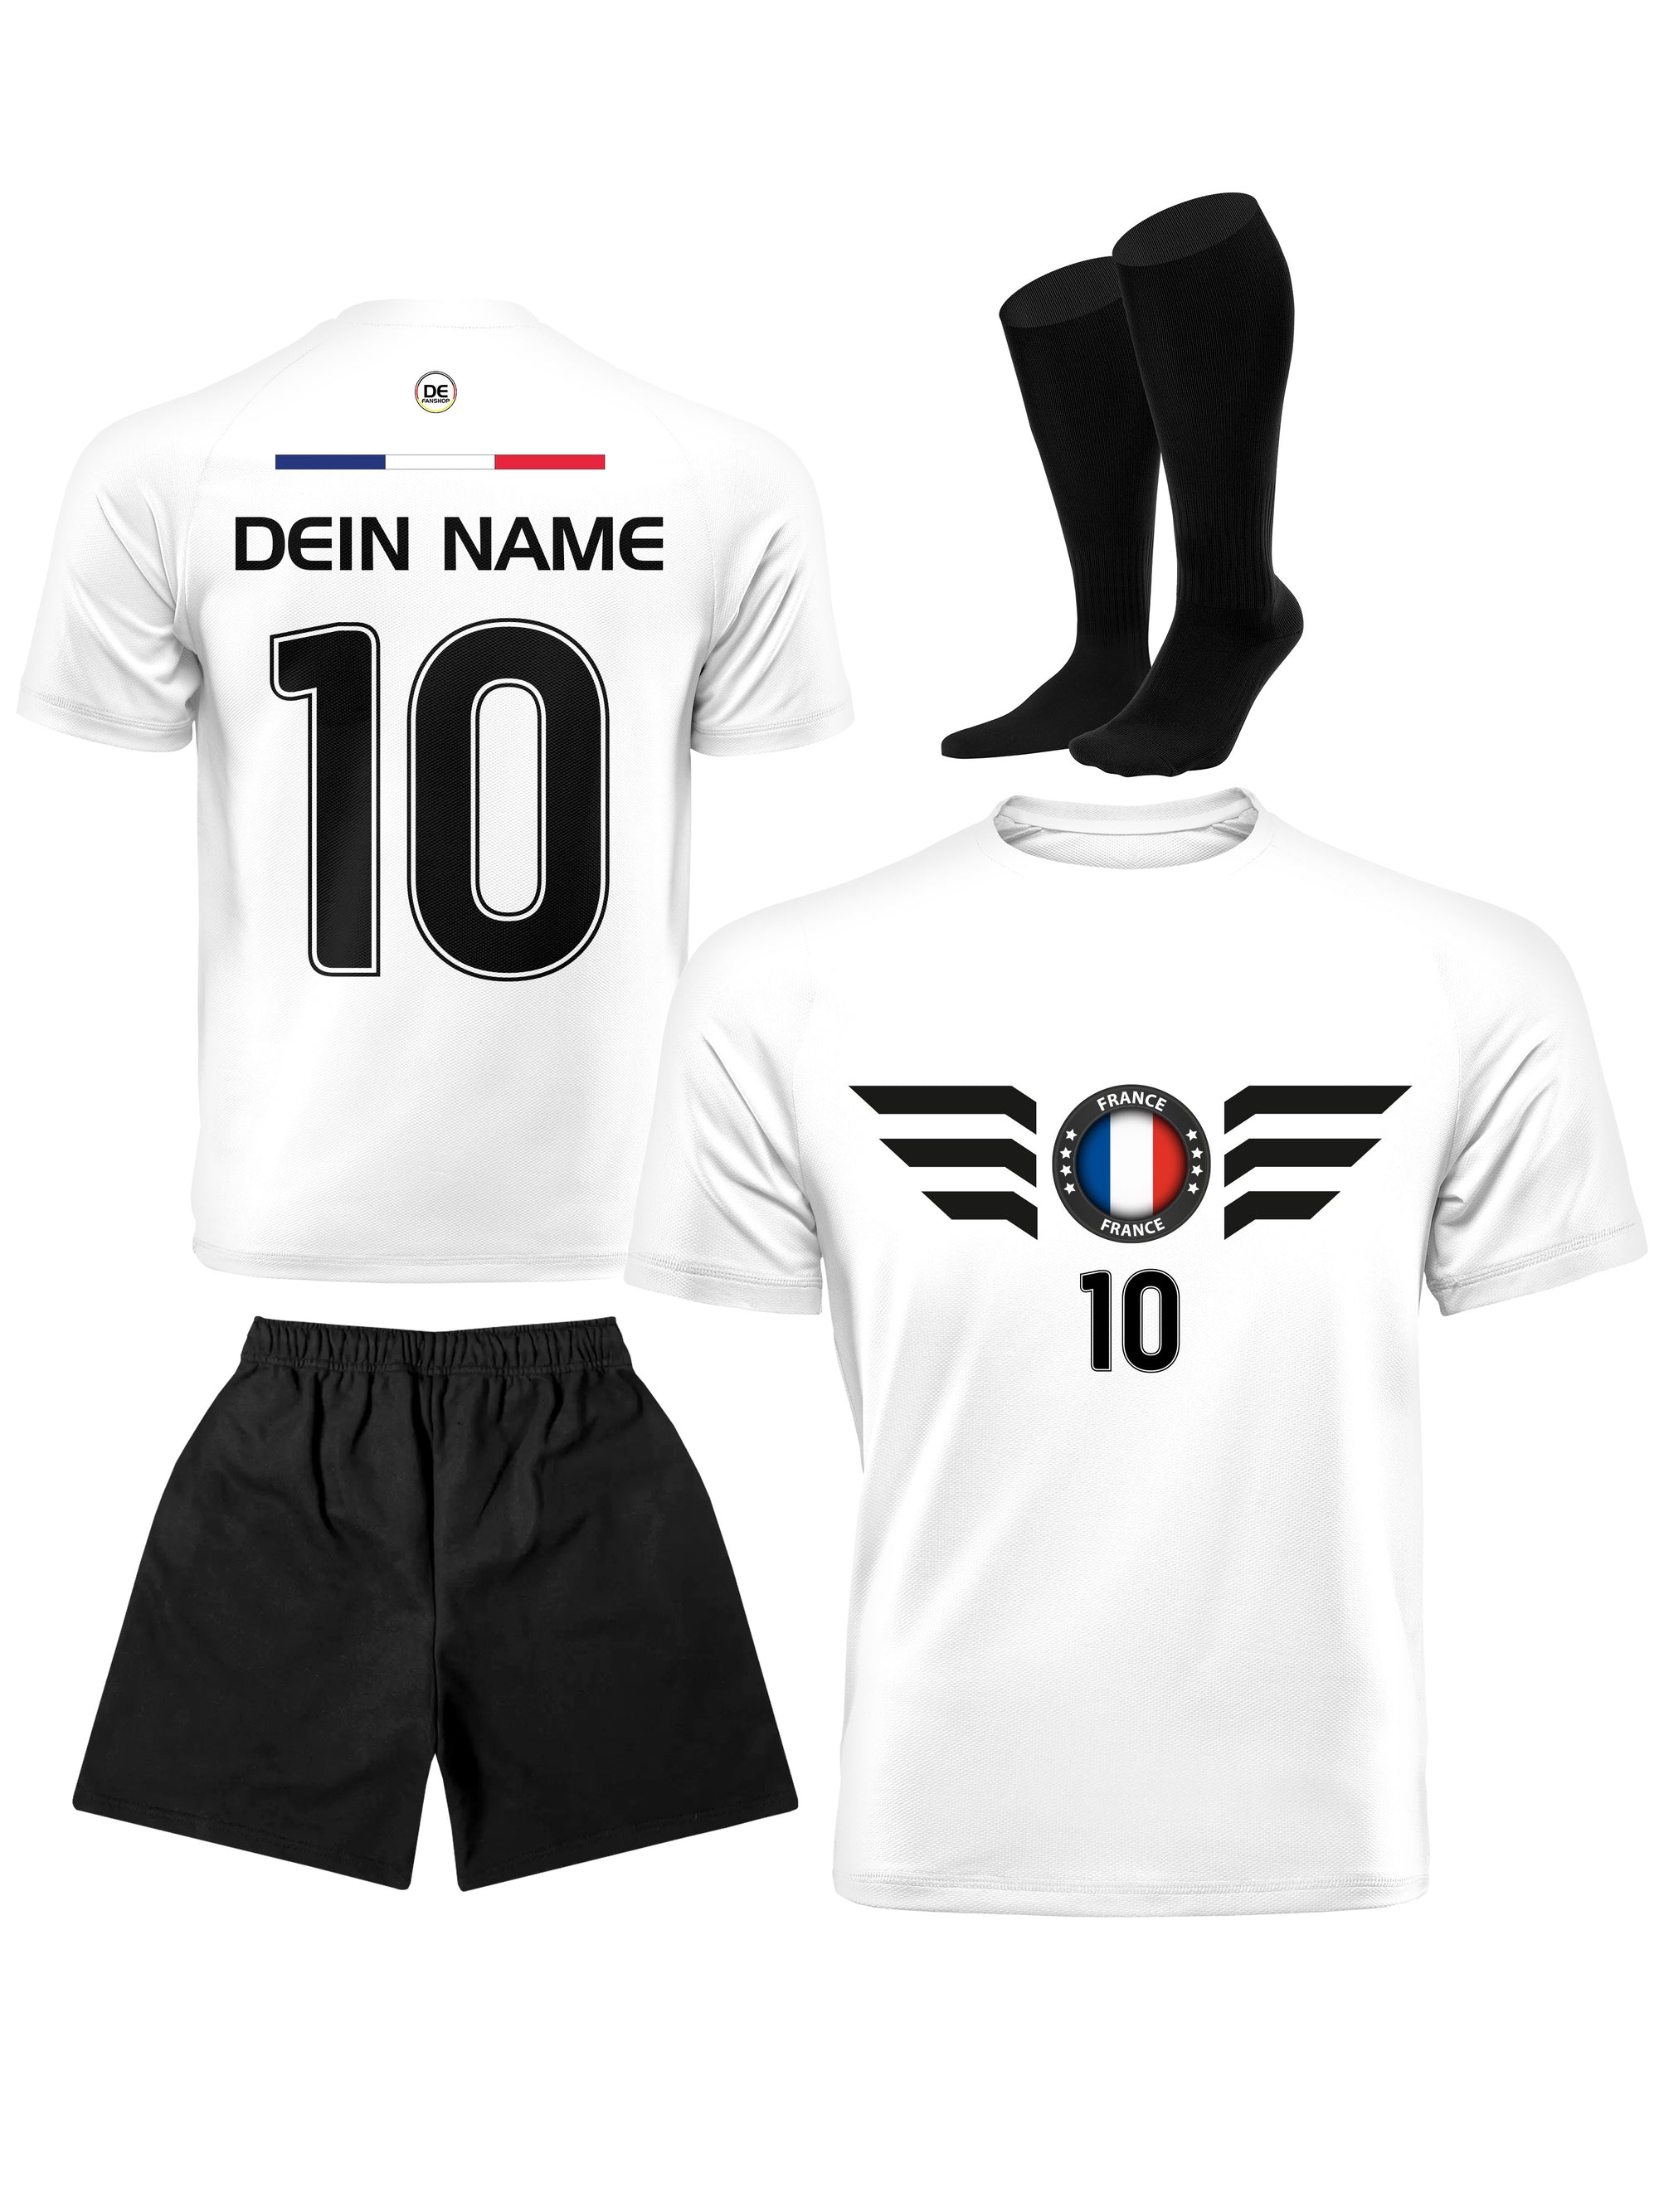 Frankreich Fußball Trikot mit Dein Name + Hose Stutzen